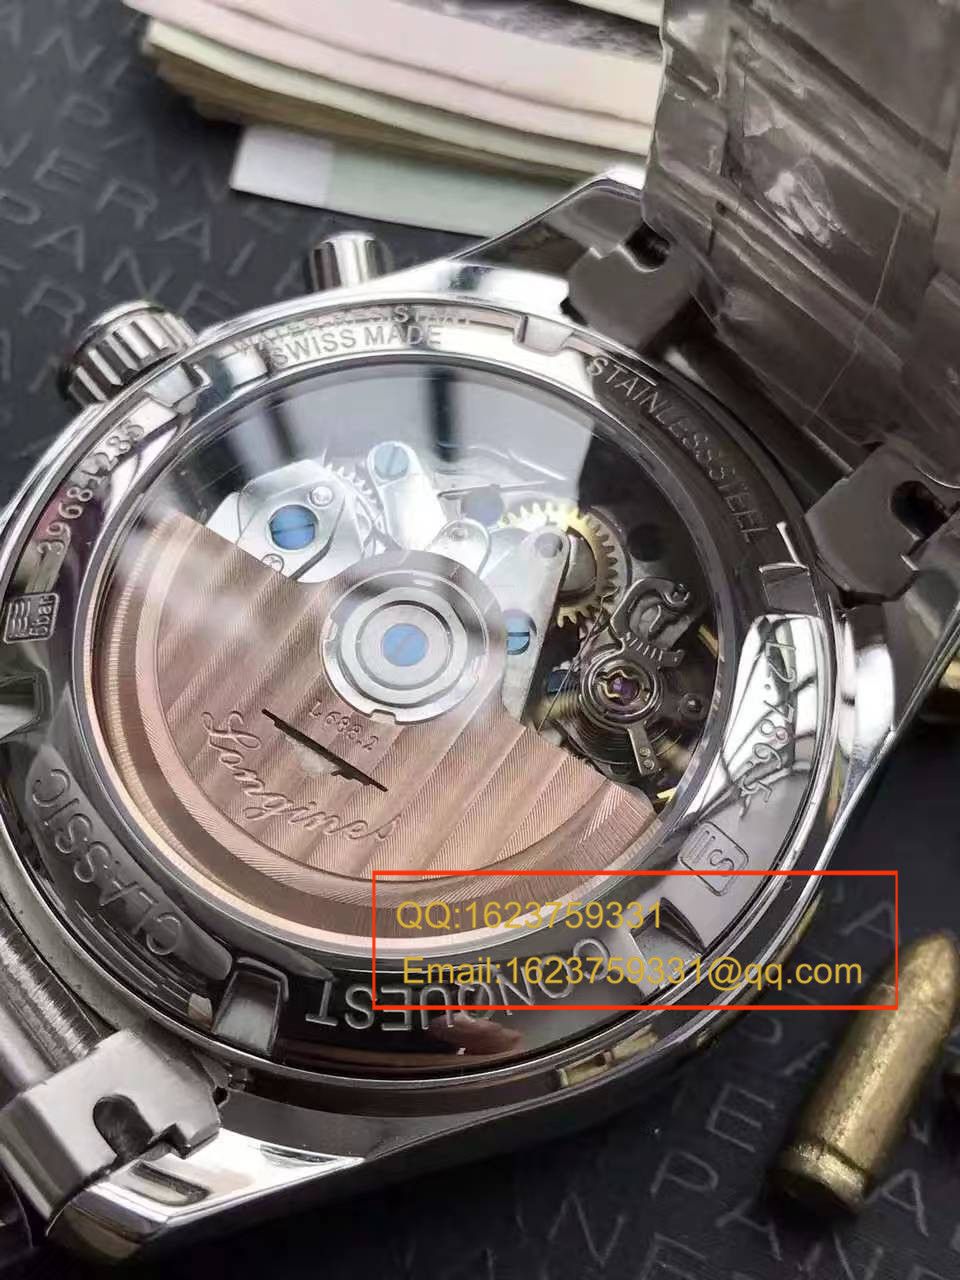 【视频评测YL厂1:1顶级复刻手表】浪琴康铂系列L2.786.4.76男表 